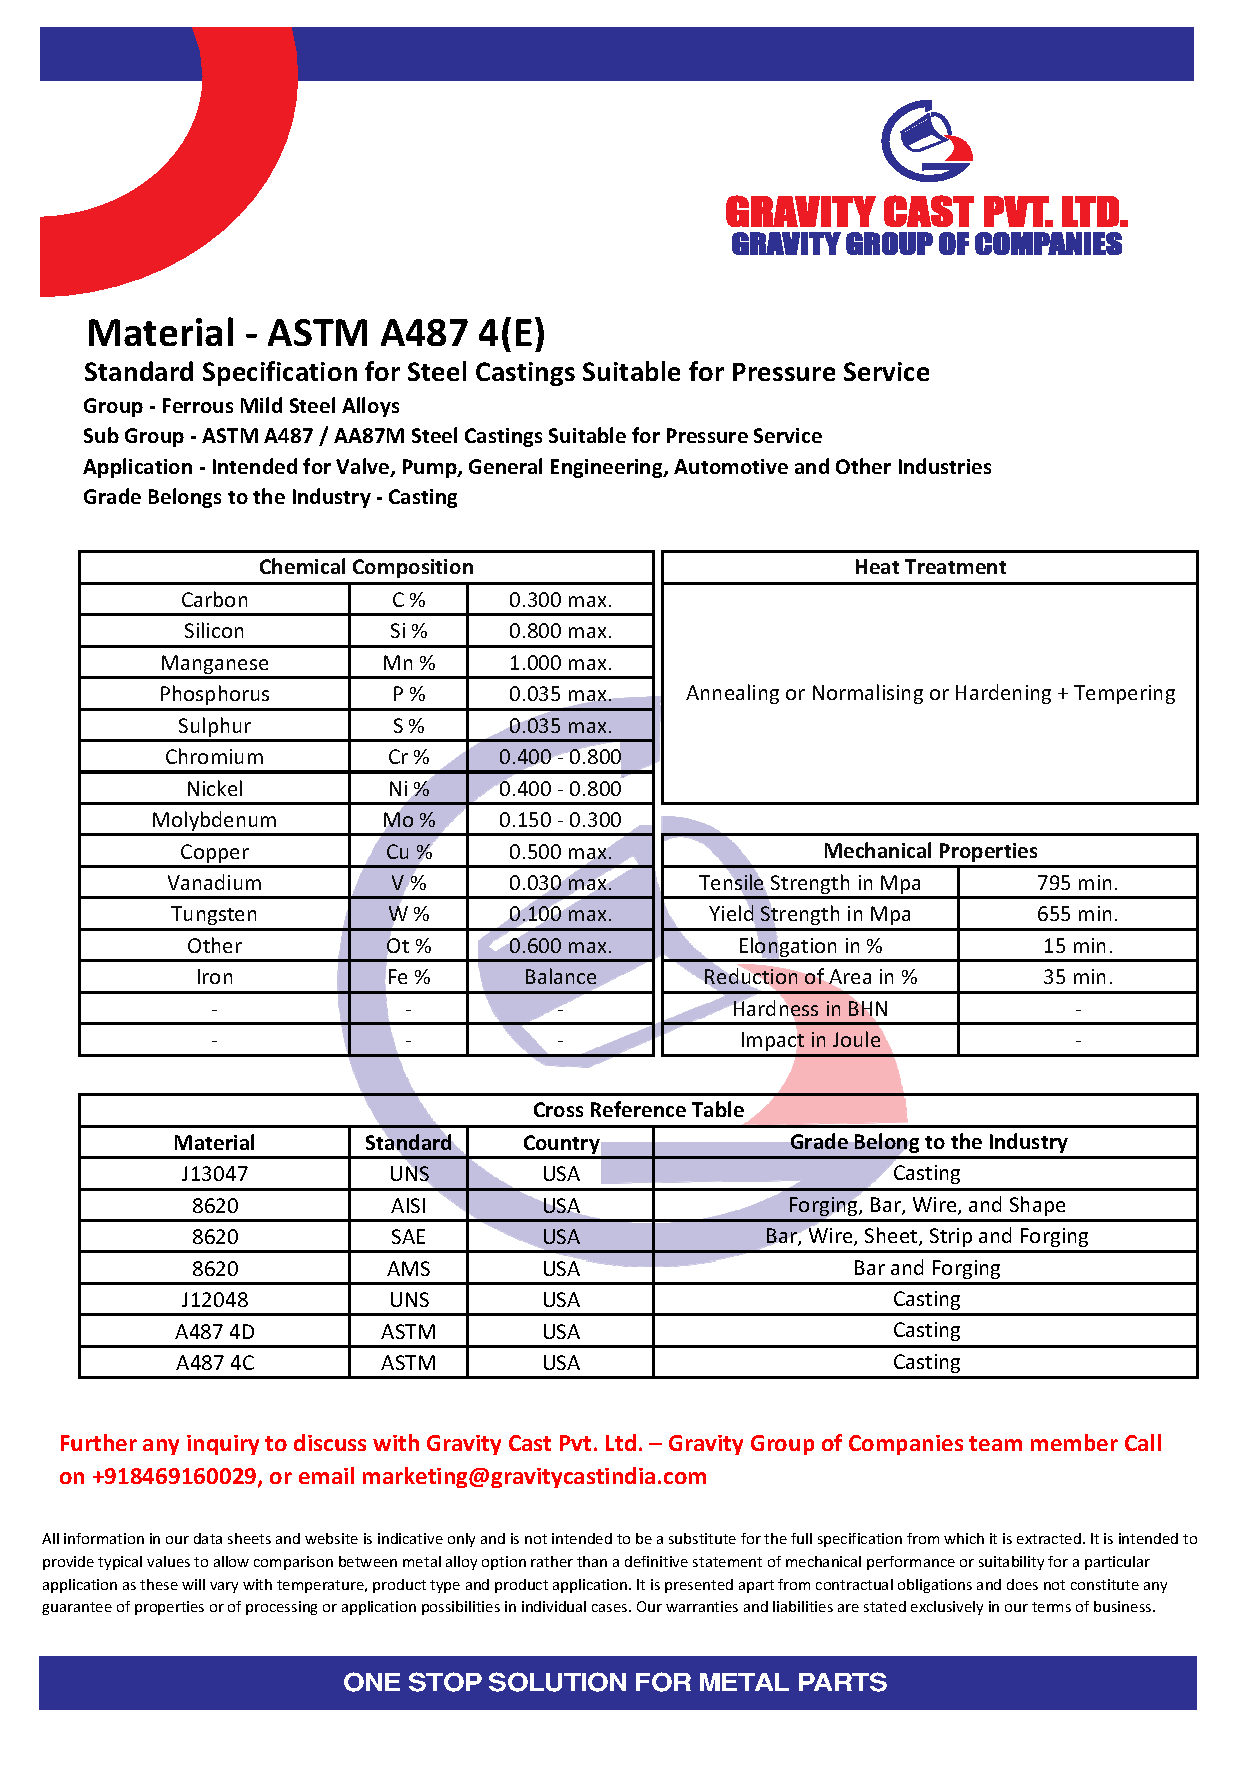 ASTM A487 4(E).pdf